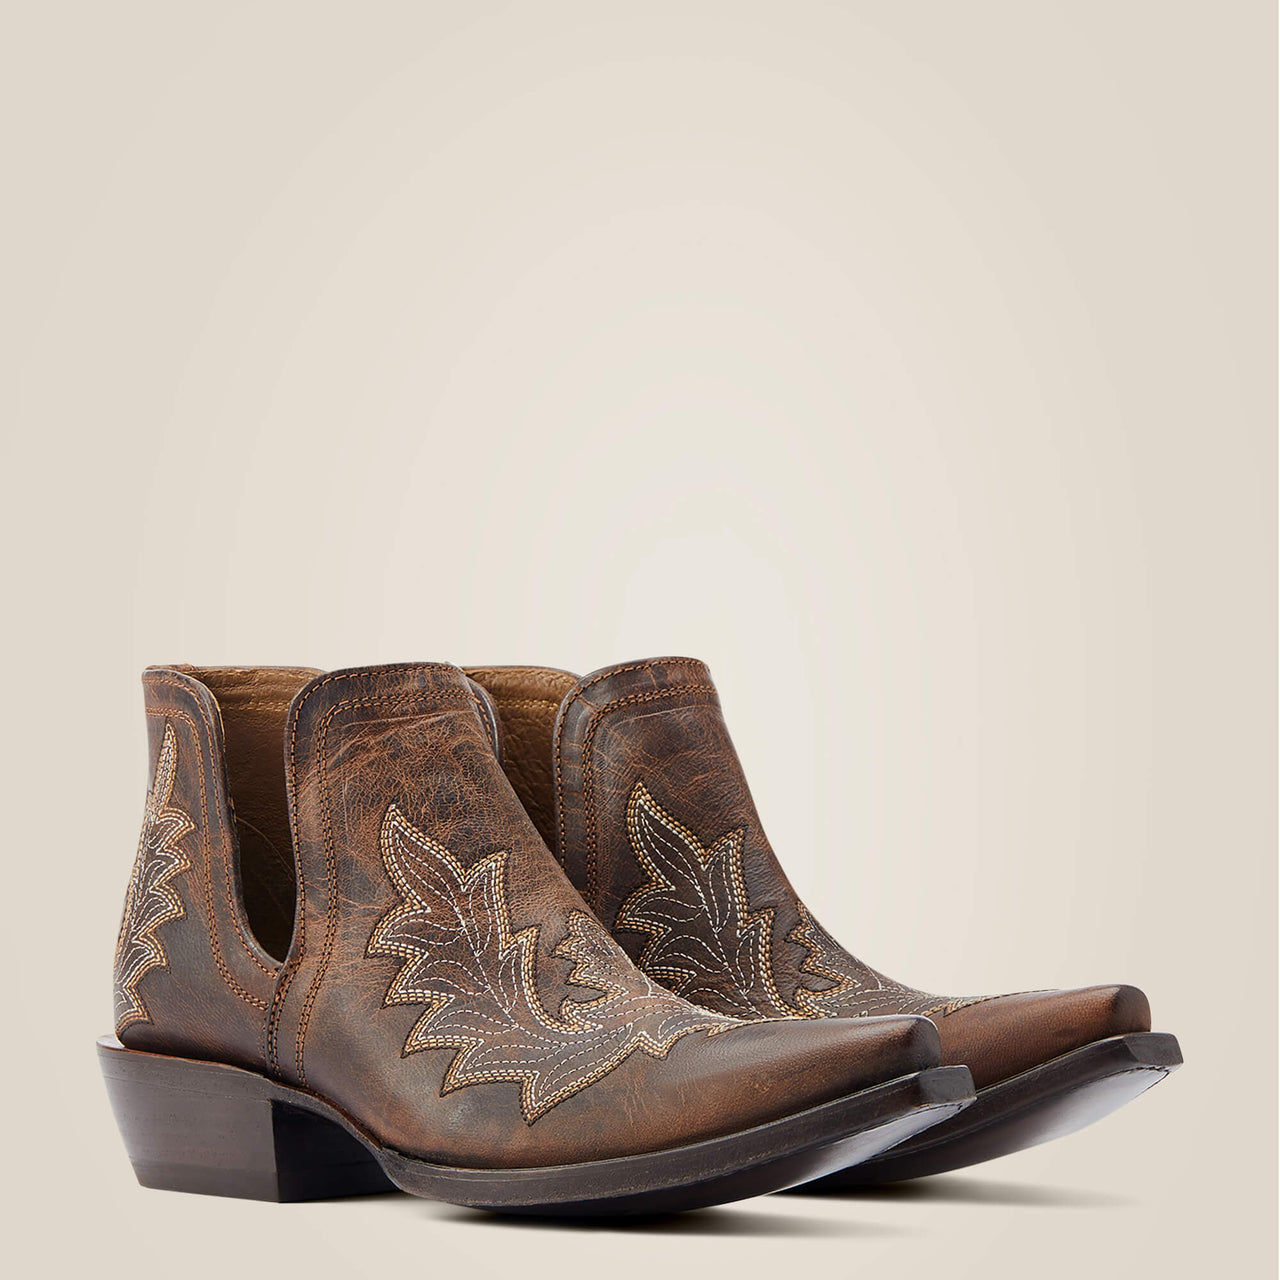 Ariat Women's Dixon Low Heel Western Boot